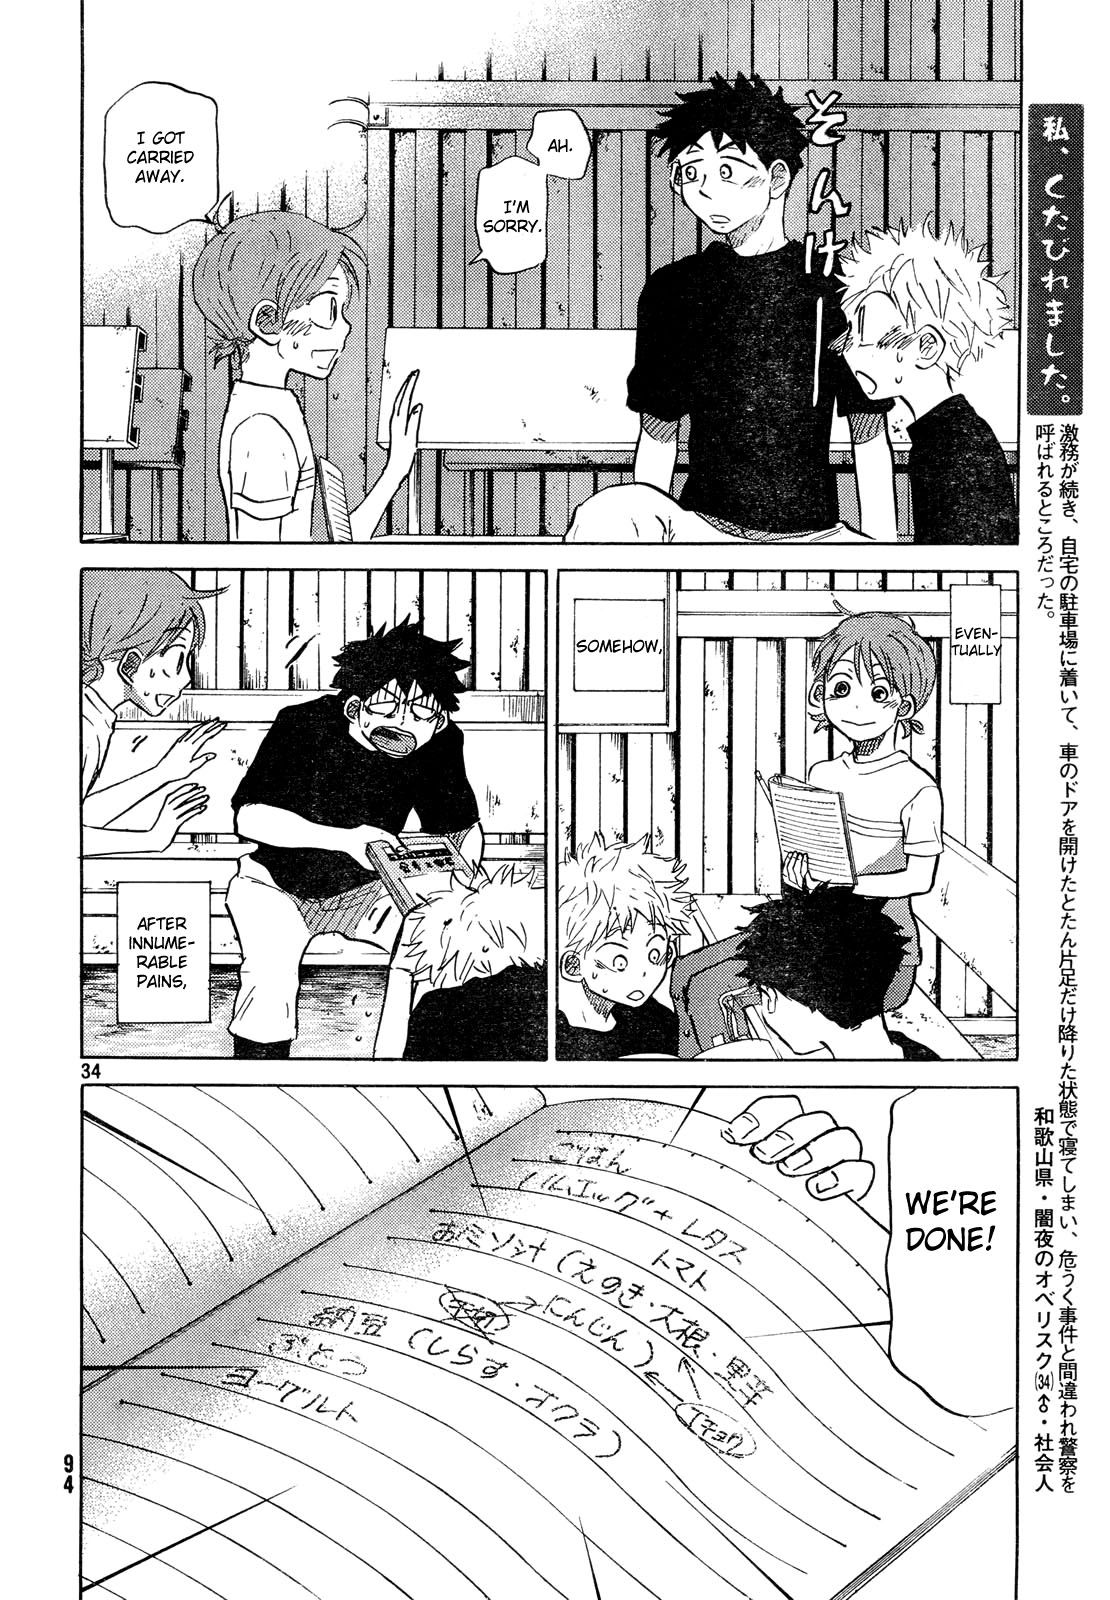 Ookiku Furikabutte - 59 page p_00035